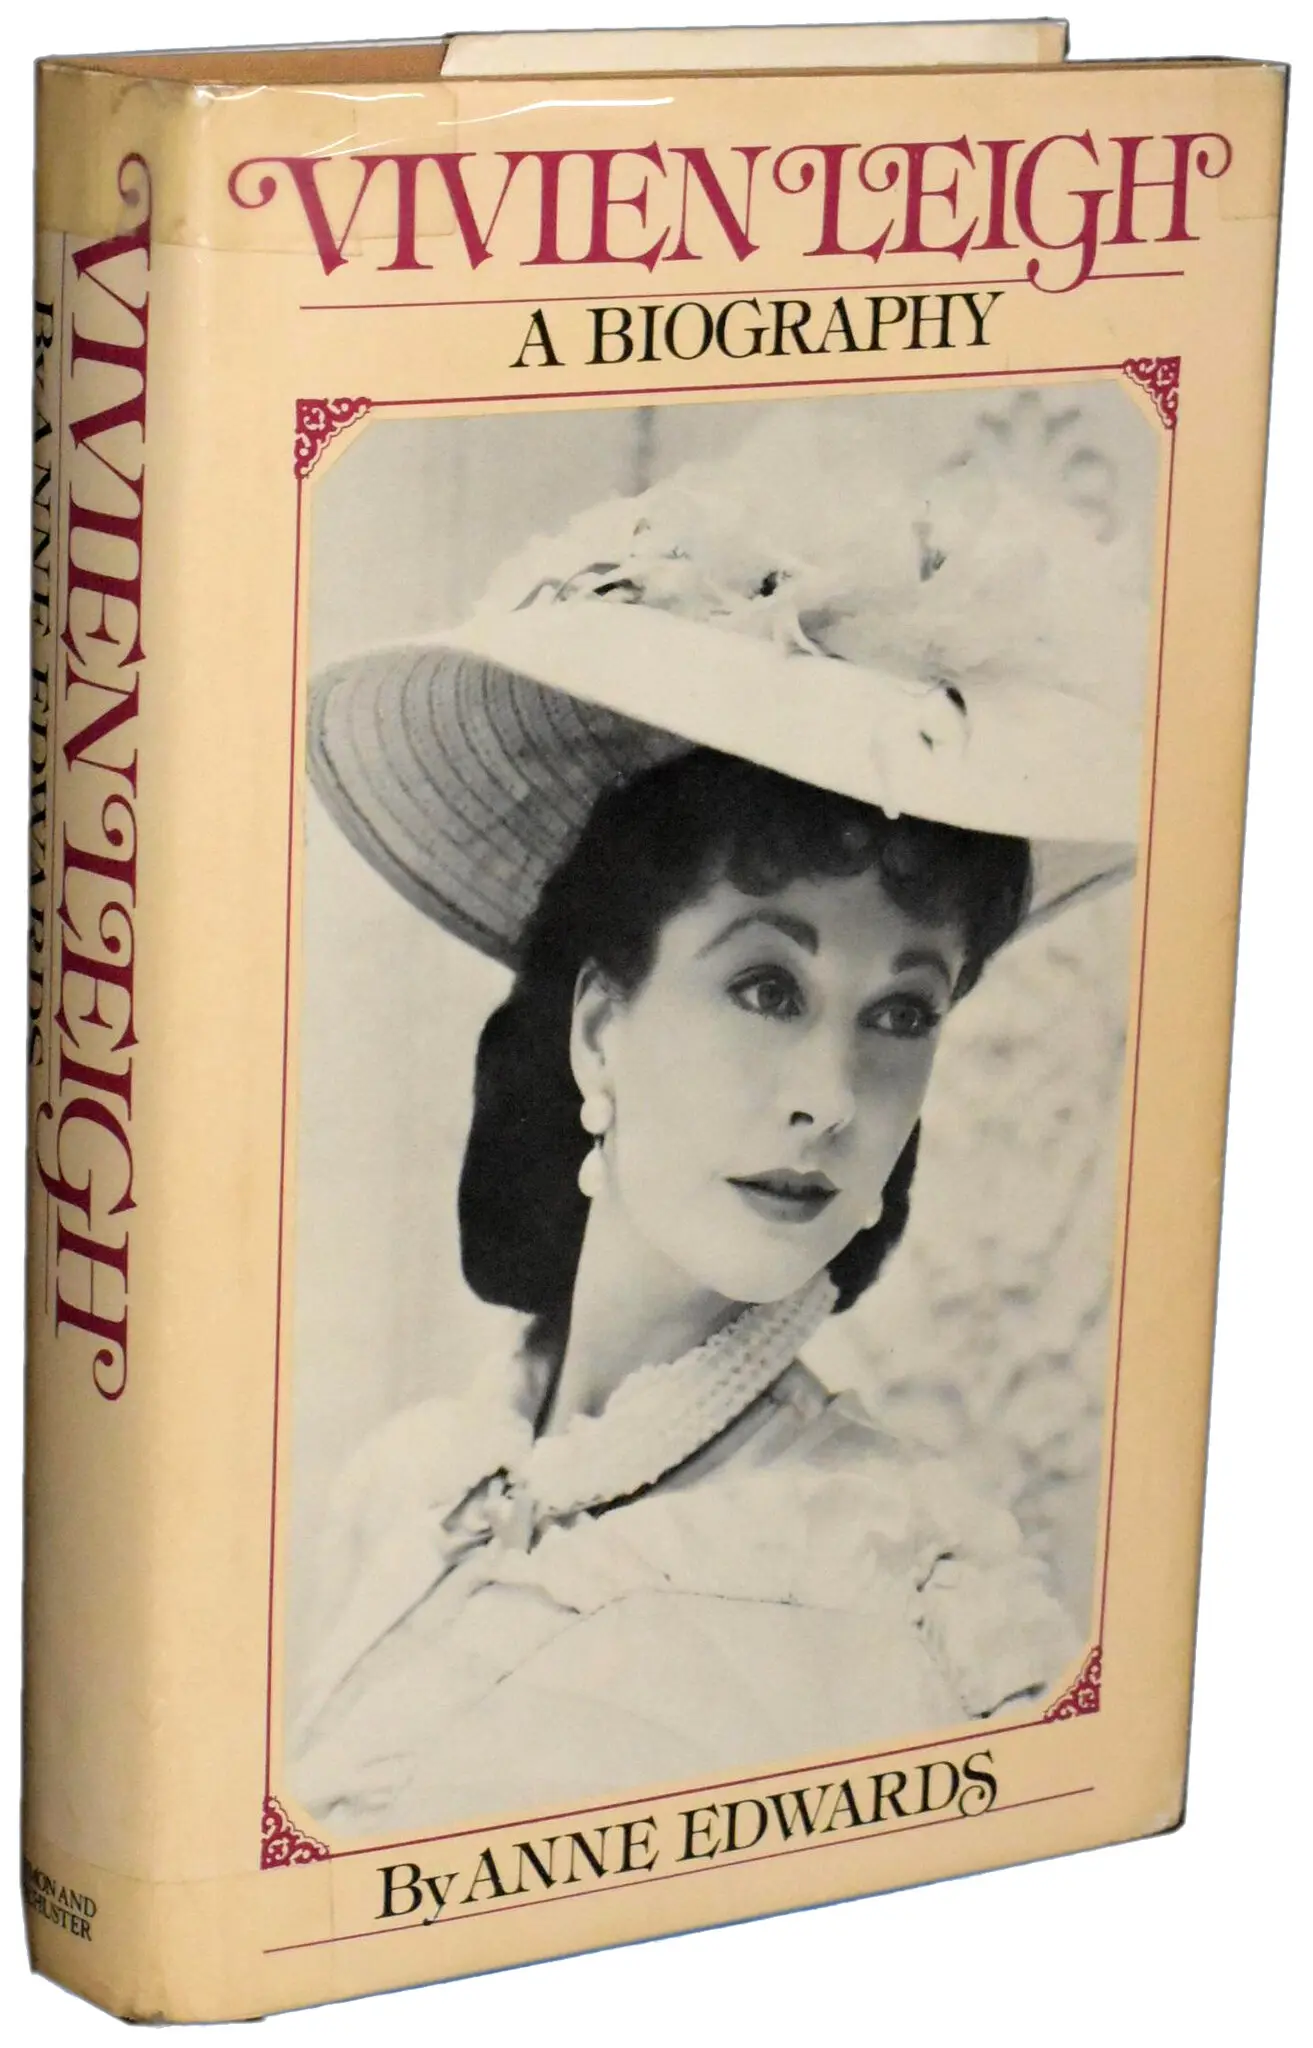 A biografia de Vivien Leigh escrita por Edwards, publicada em 1977, passou 19 semanas na lista de best-sellers de capa dura do The New York Times. (Crédito da fotografia: Simon & Schuster)